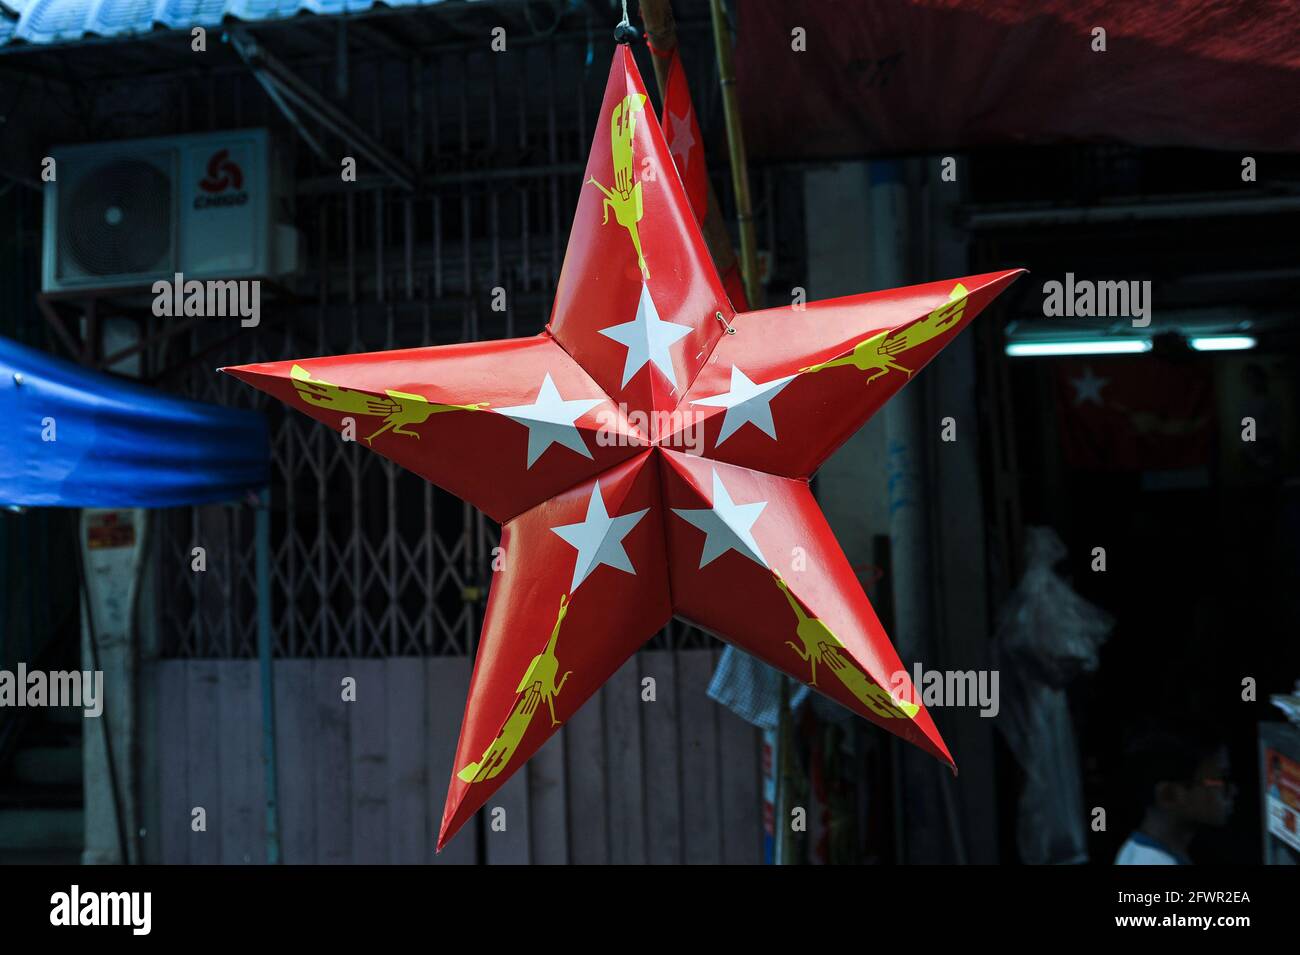 31.10.2015, Yangon, Myanmar, Asia - una stella rossa in cartone con il logo del partito NLD (Lega Nazionale per la democrazia) è appesa in un negozio. Foto Stock